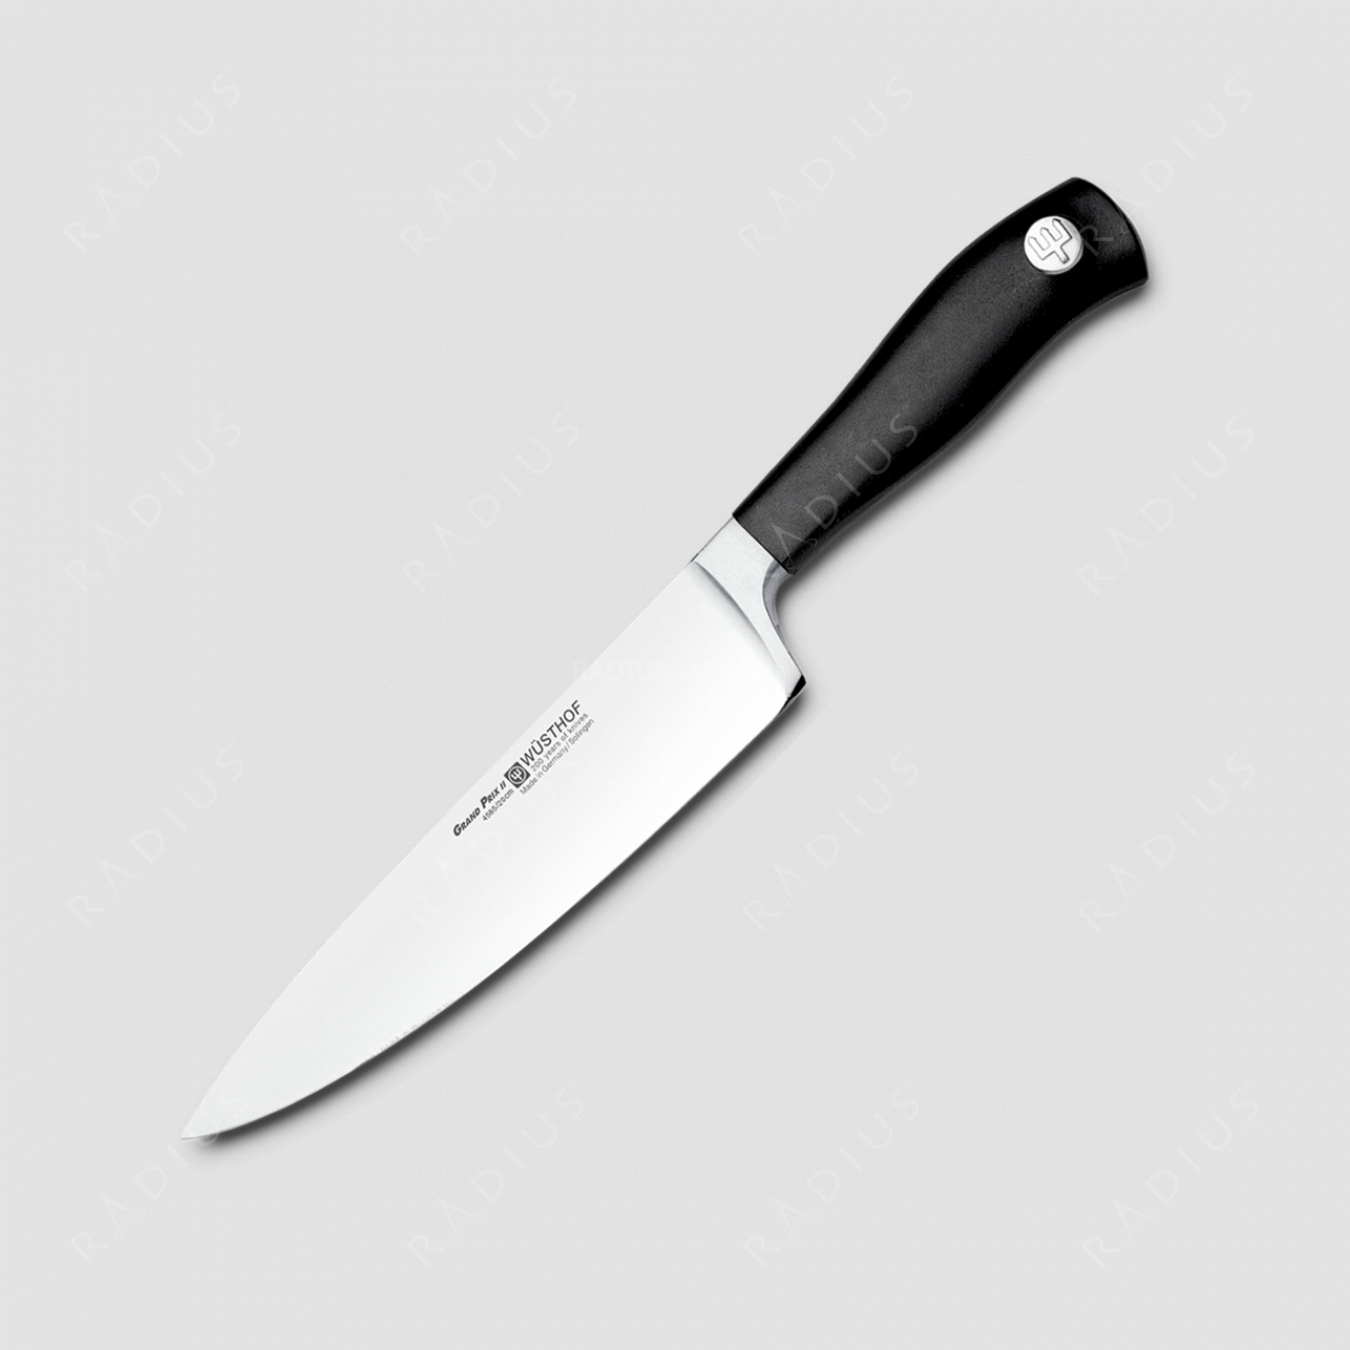 Профессиональный поварской кухонный нож 20 см, серия Grand Prix II, WUESTHOF, Золинген, Германия